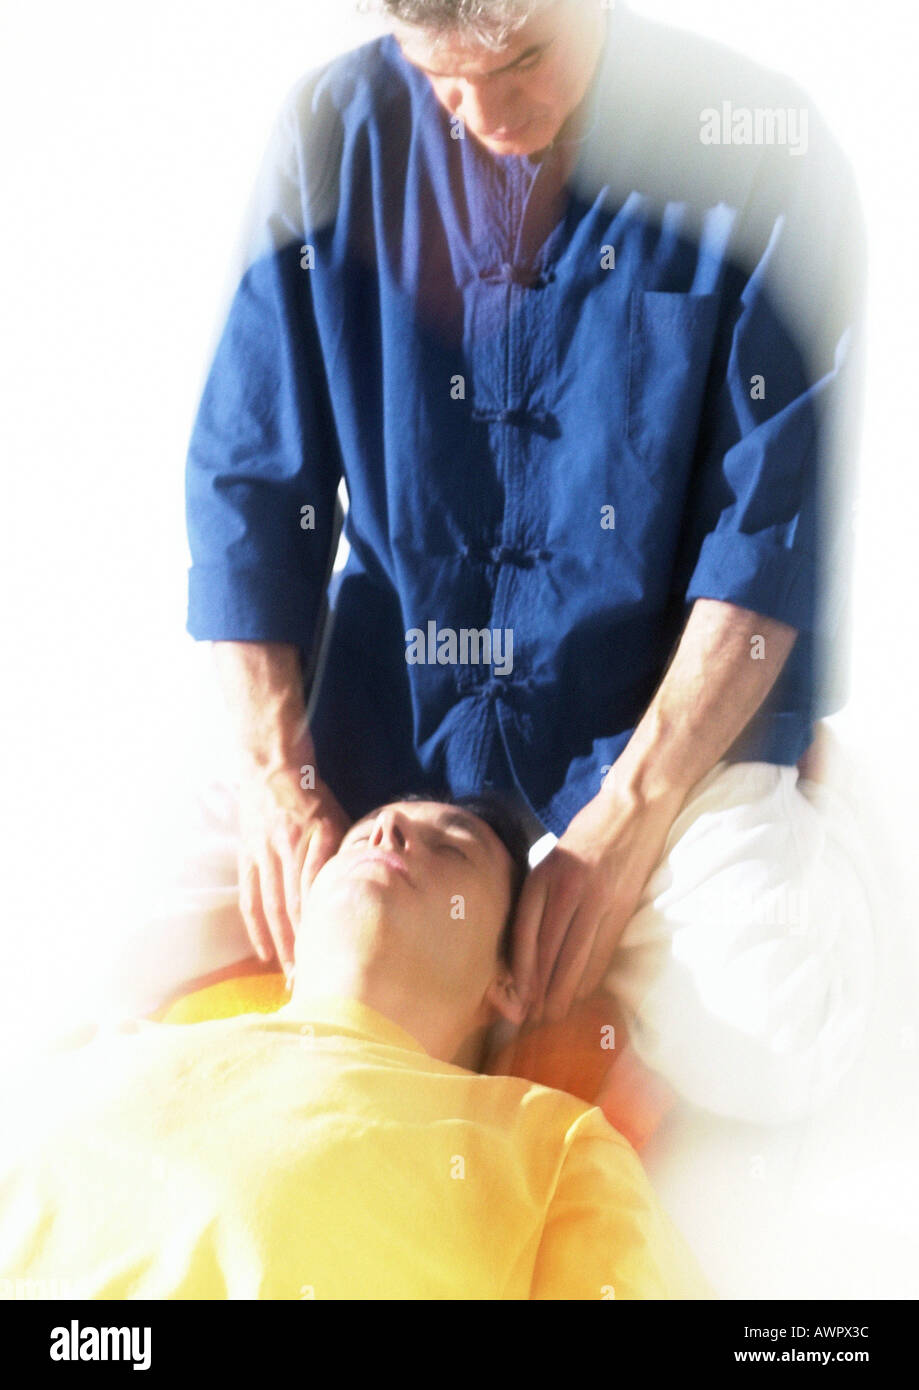 Massage therapist massaging man's head Stock Photo